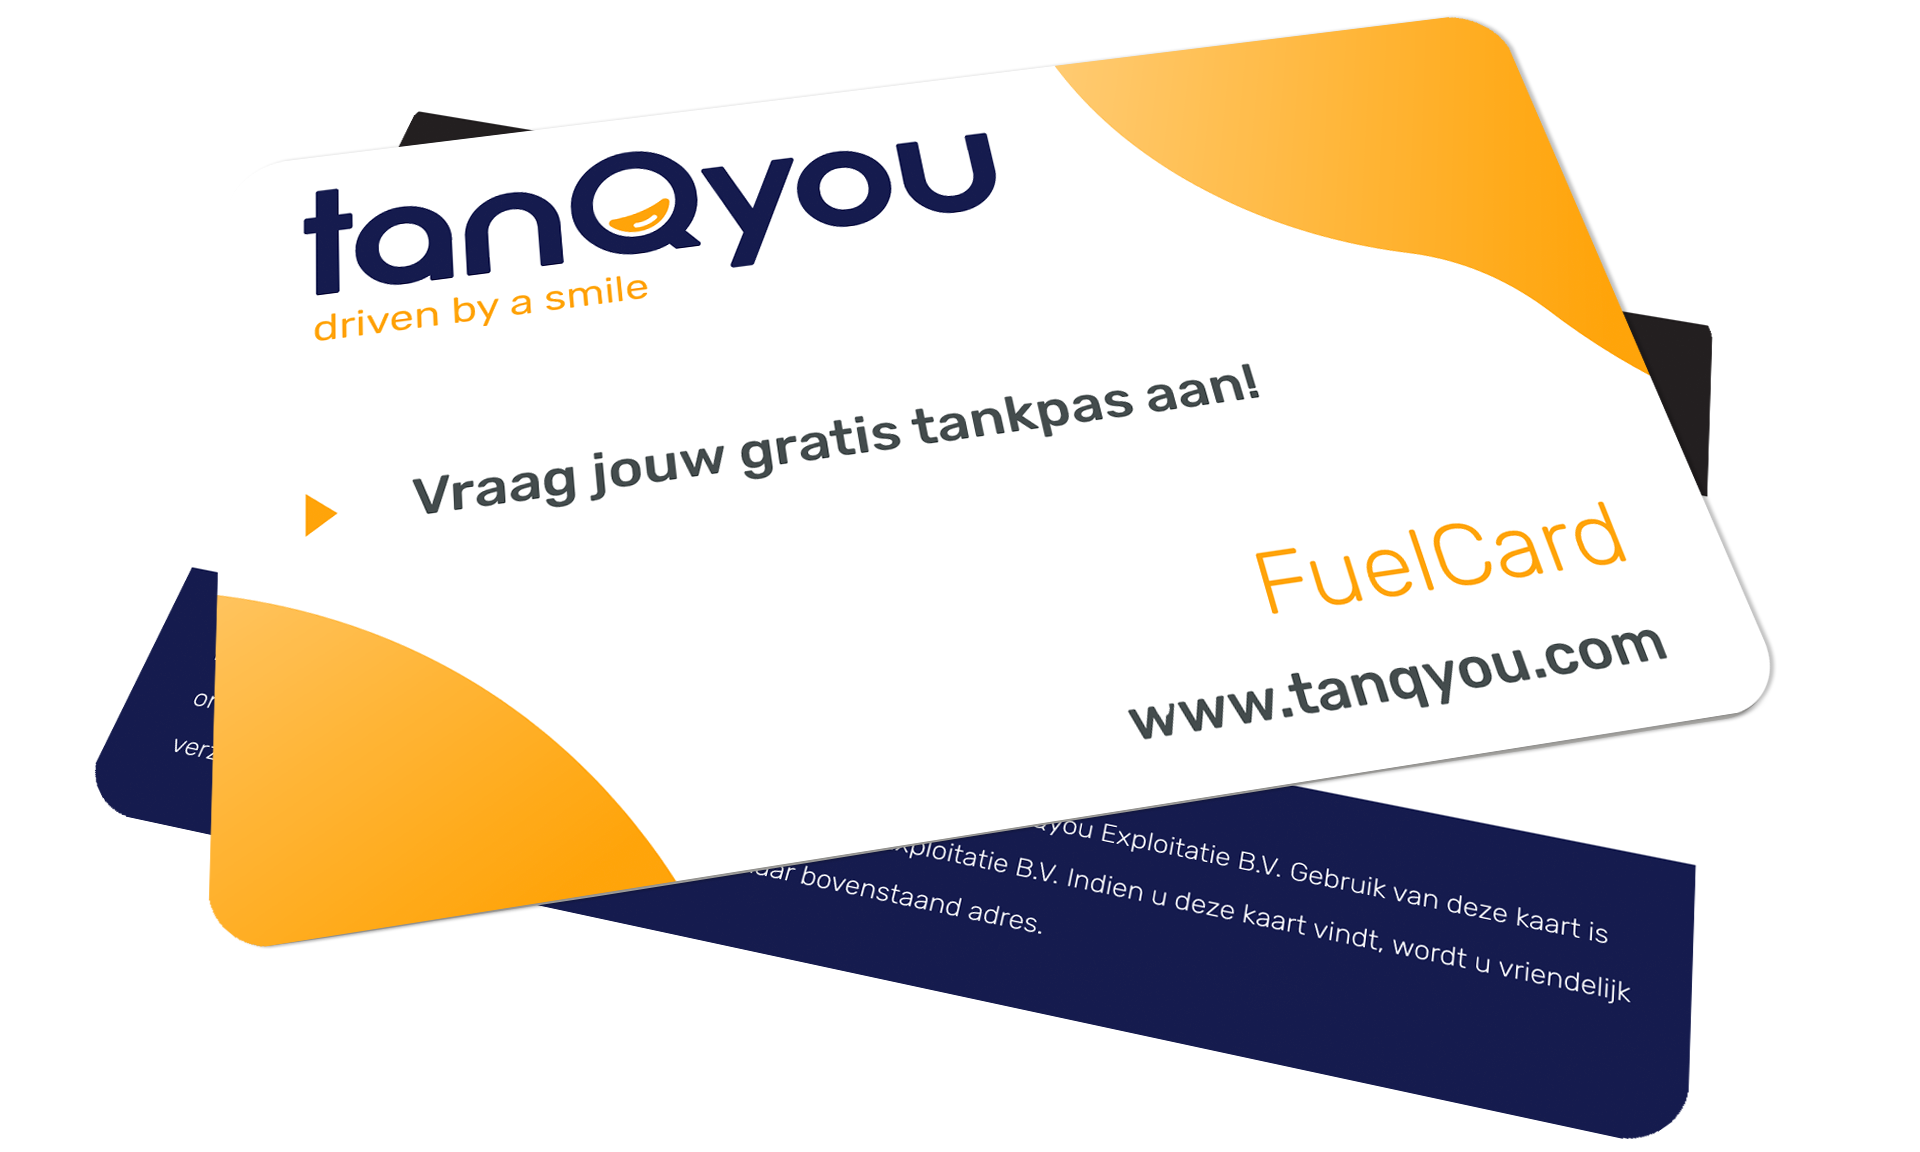 Fuelcard